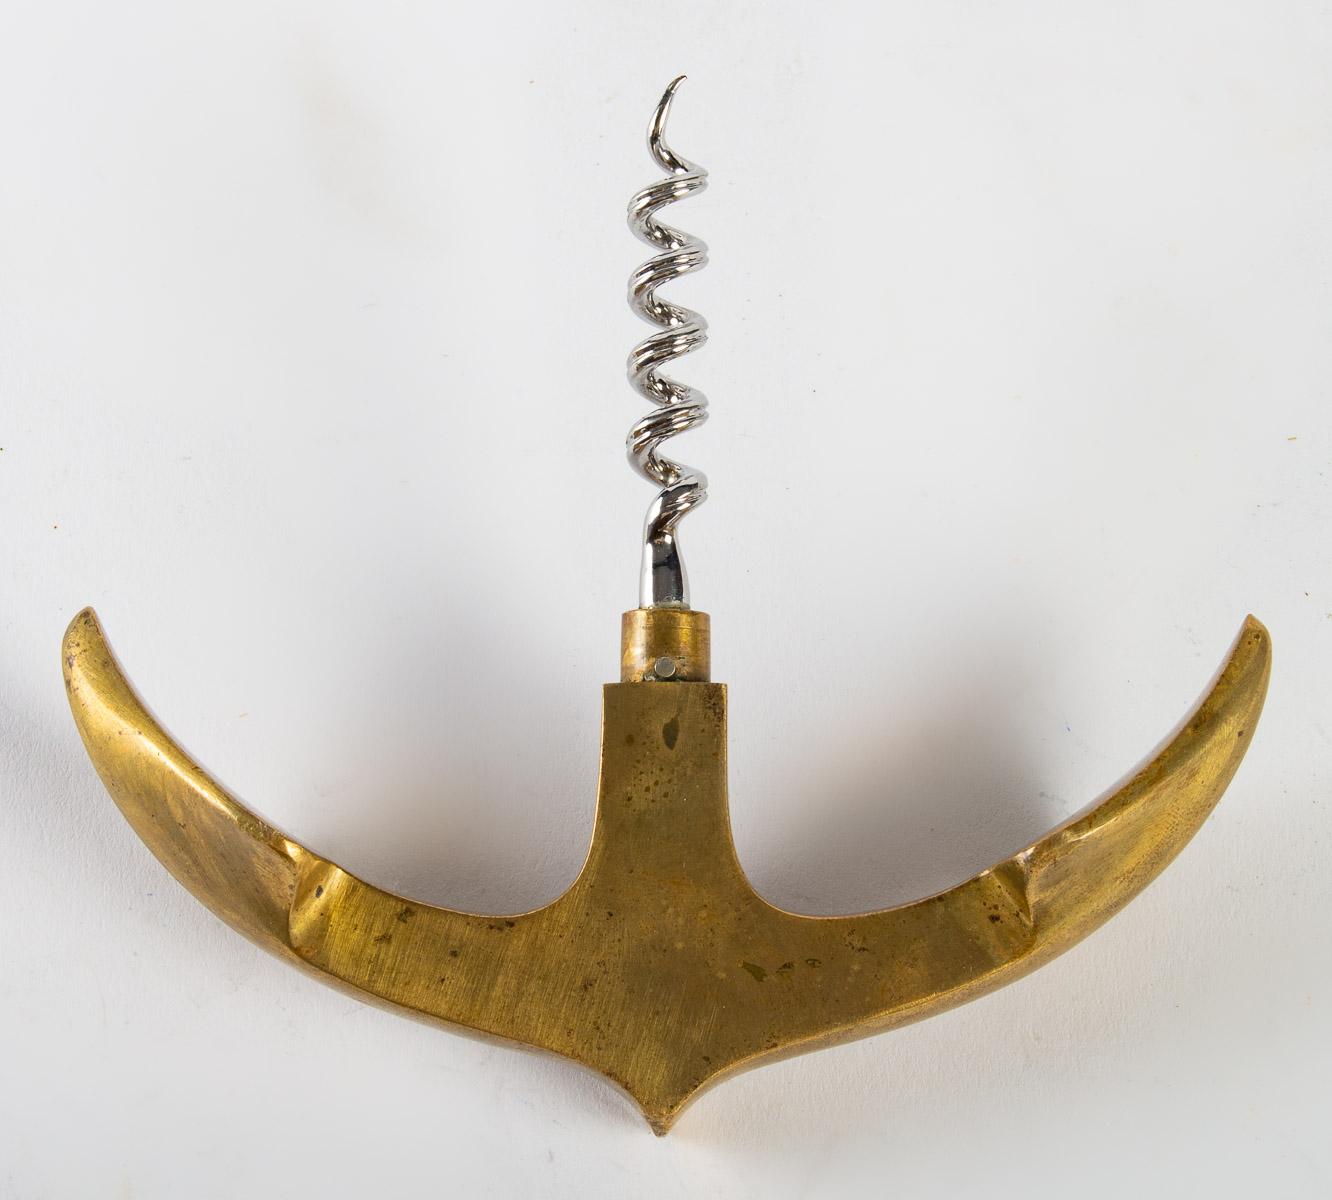 Hermès corkscrew and bottle opener.
Measures: H: 18 cm, W: 13 cm, D: 3 cm.